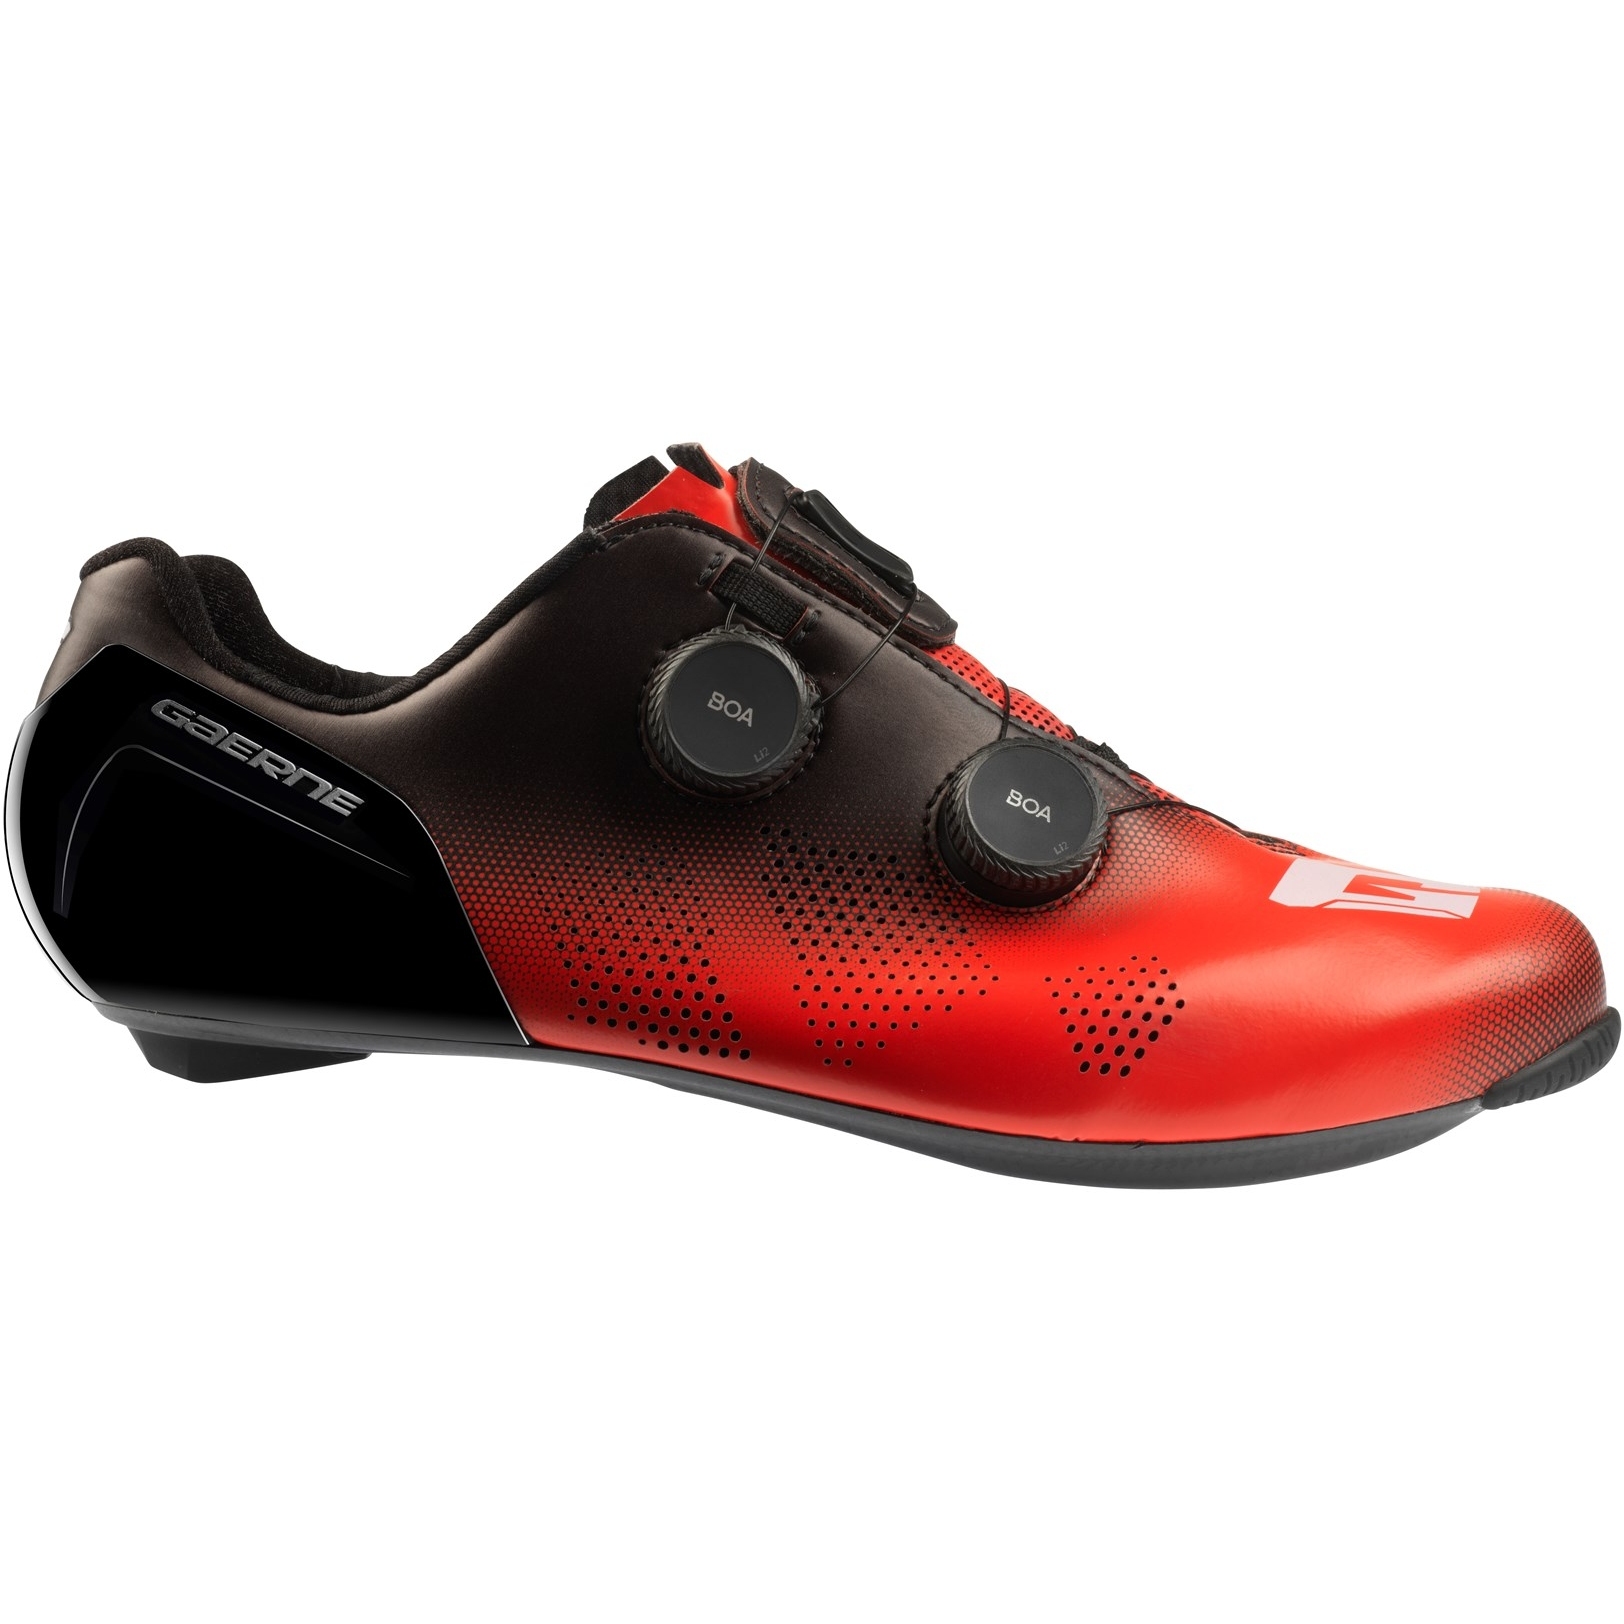 Productfoto van Gaerne Carbon G.STL Racefietsschoenen - rood/zwart